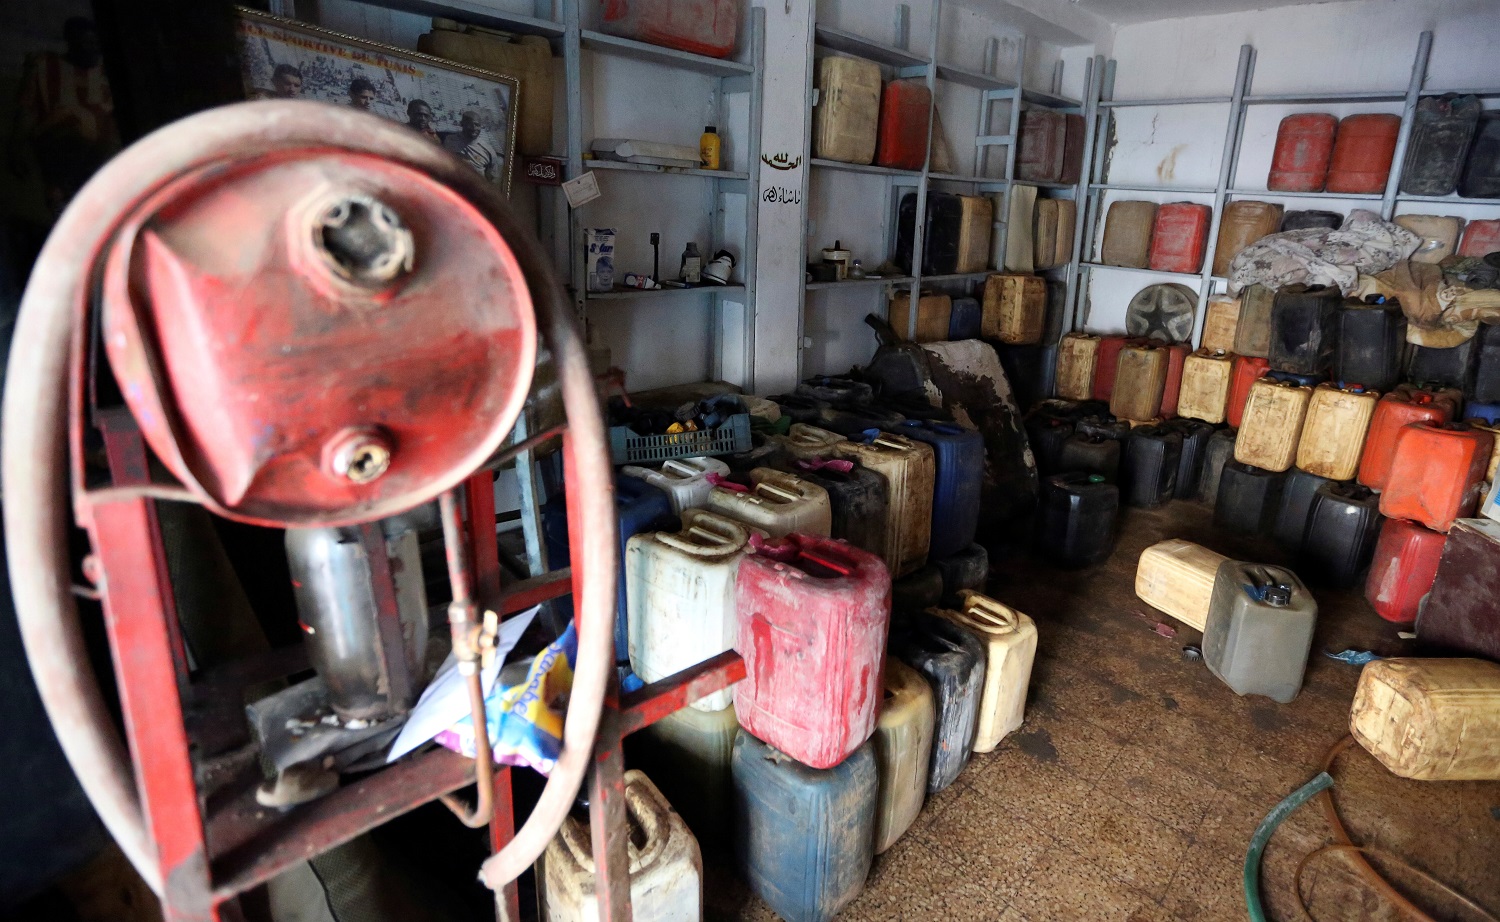 جالونات مشتقات نفطية فارغة في أحد متاجر التزويد في ليبيا، قرب الحدود مع تونس، 26 أيار/مايو 2019. زبير سويسي/ رويترز 